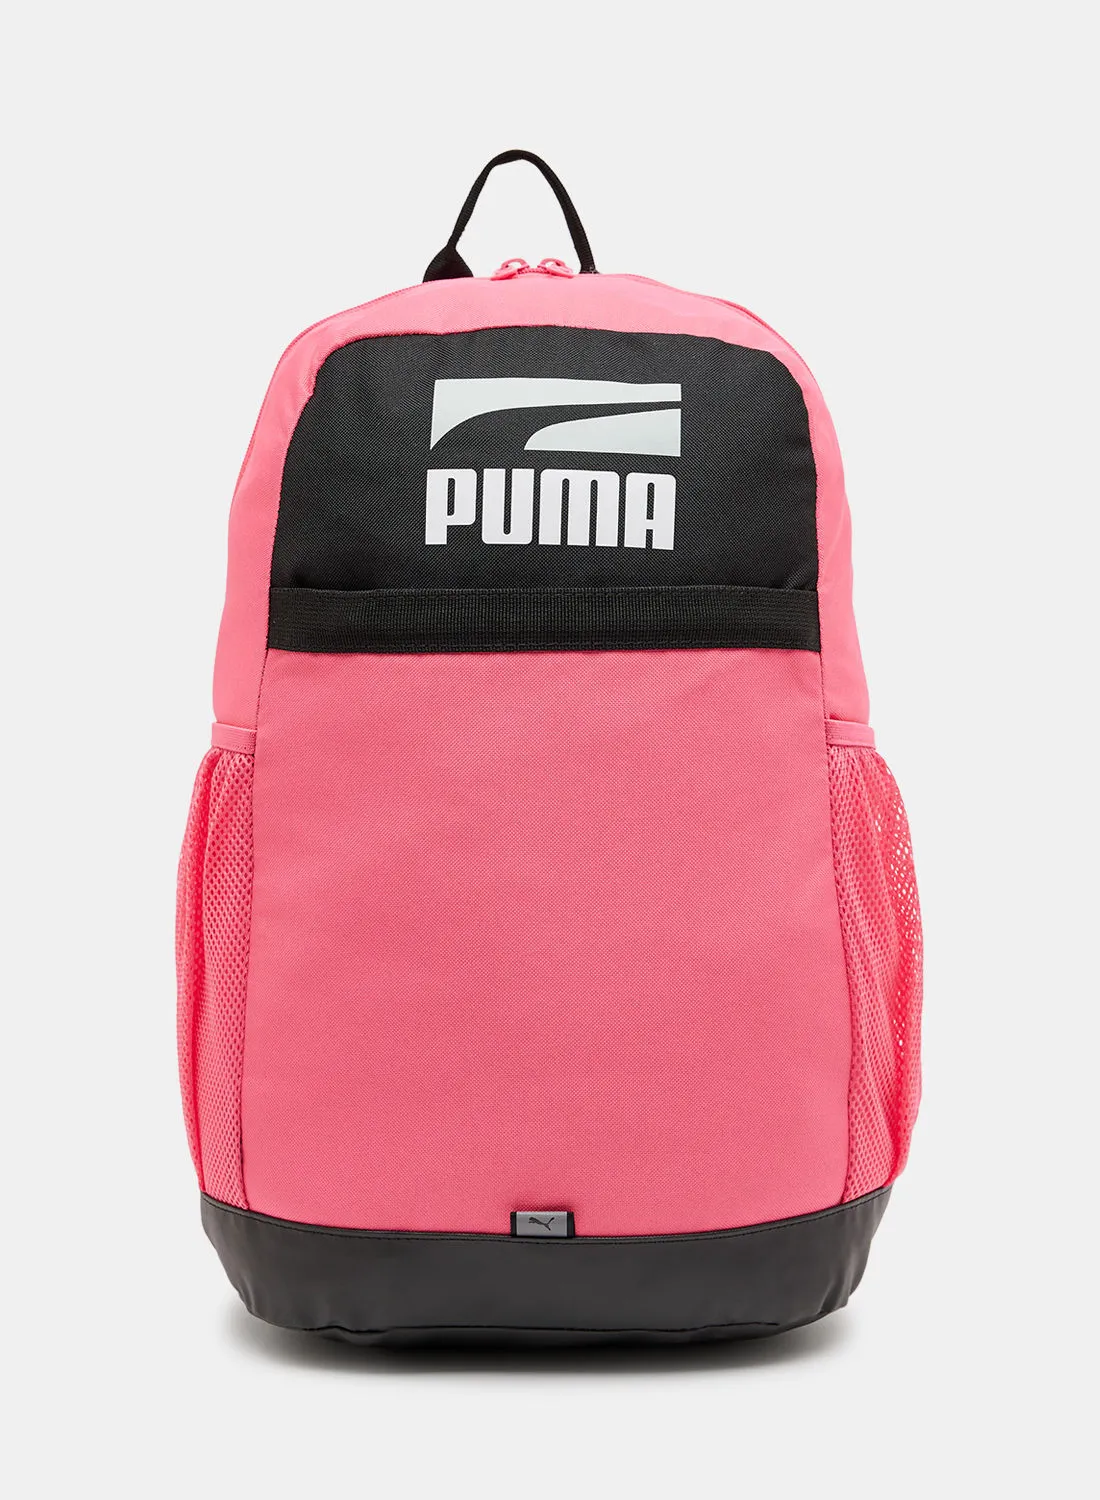 PUMA Unisex Plus Backpack